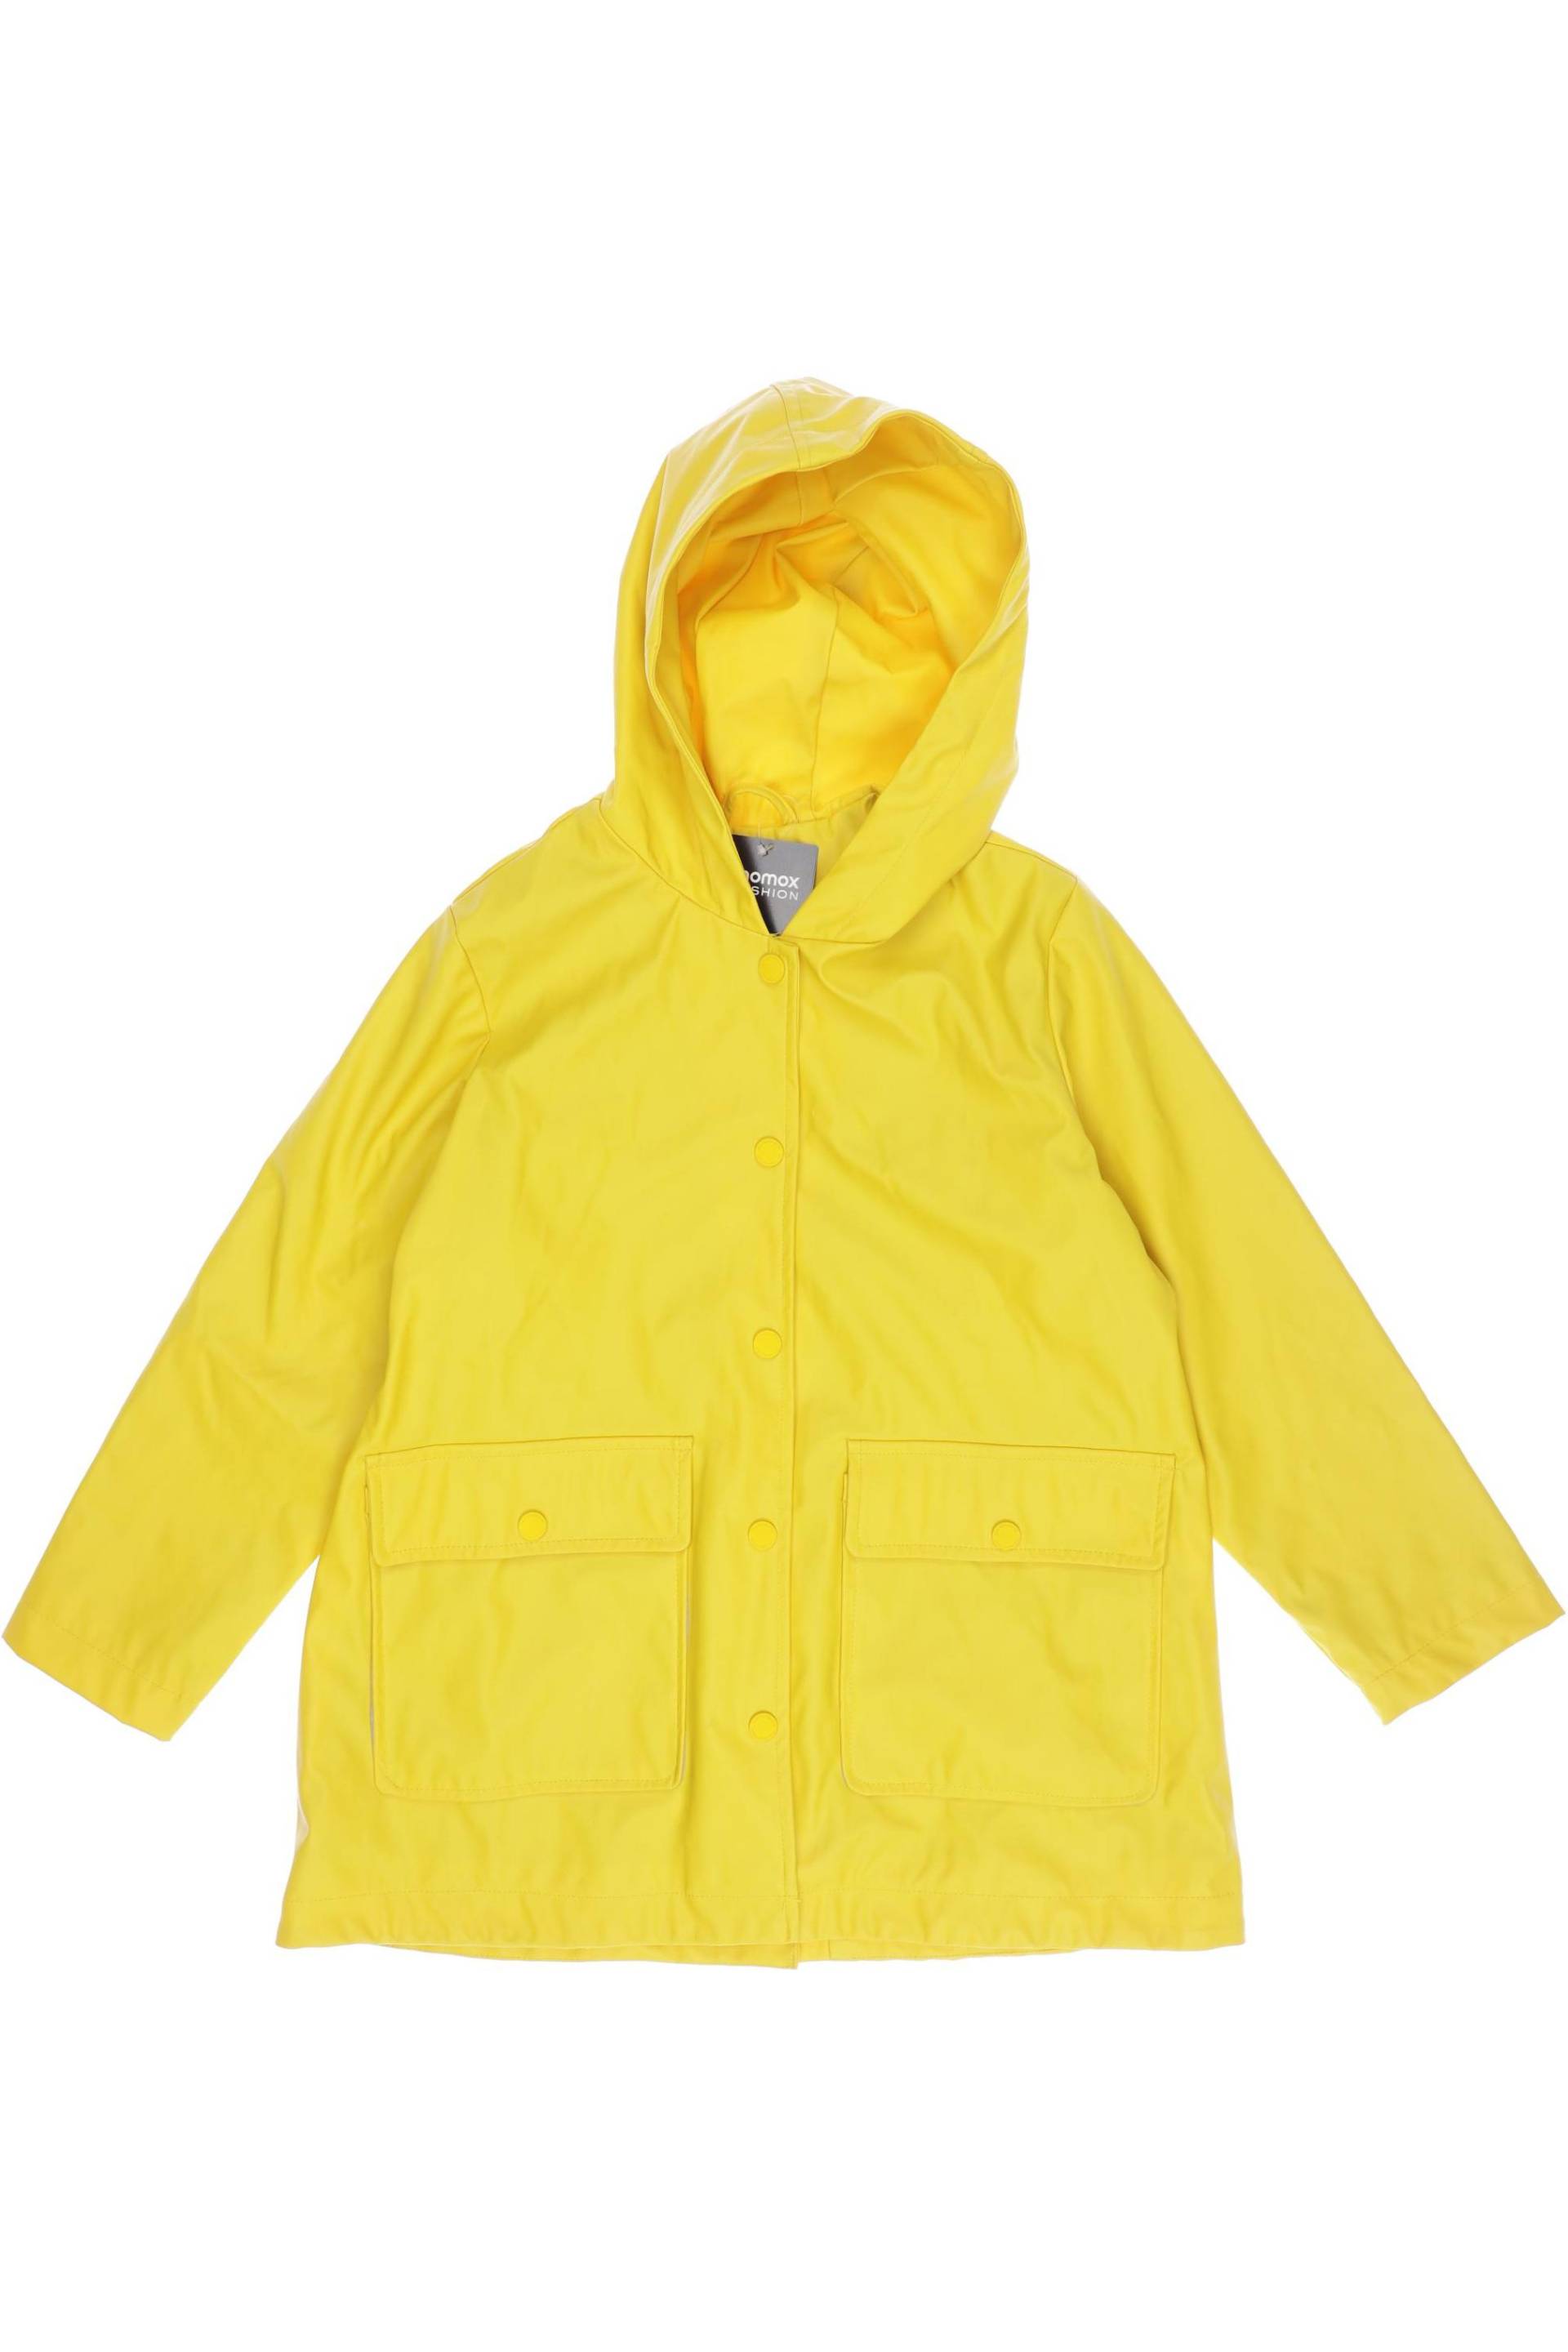 Zara Damen Jacke, gelb, Gr. 128 von ZARA